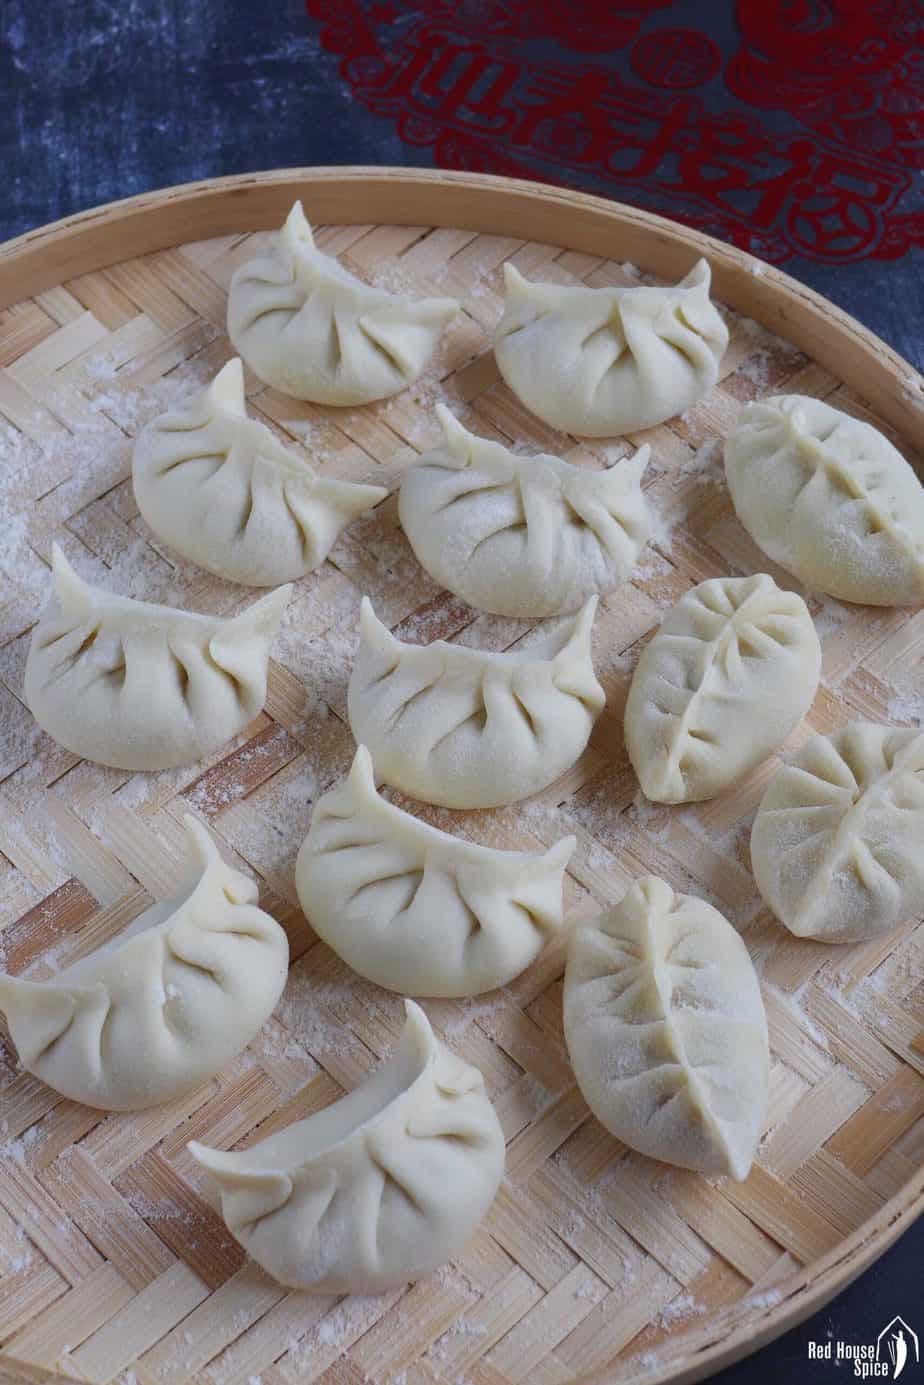 uncooked dumplings